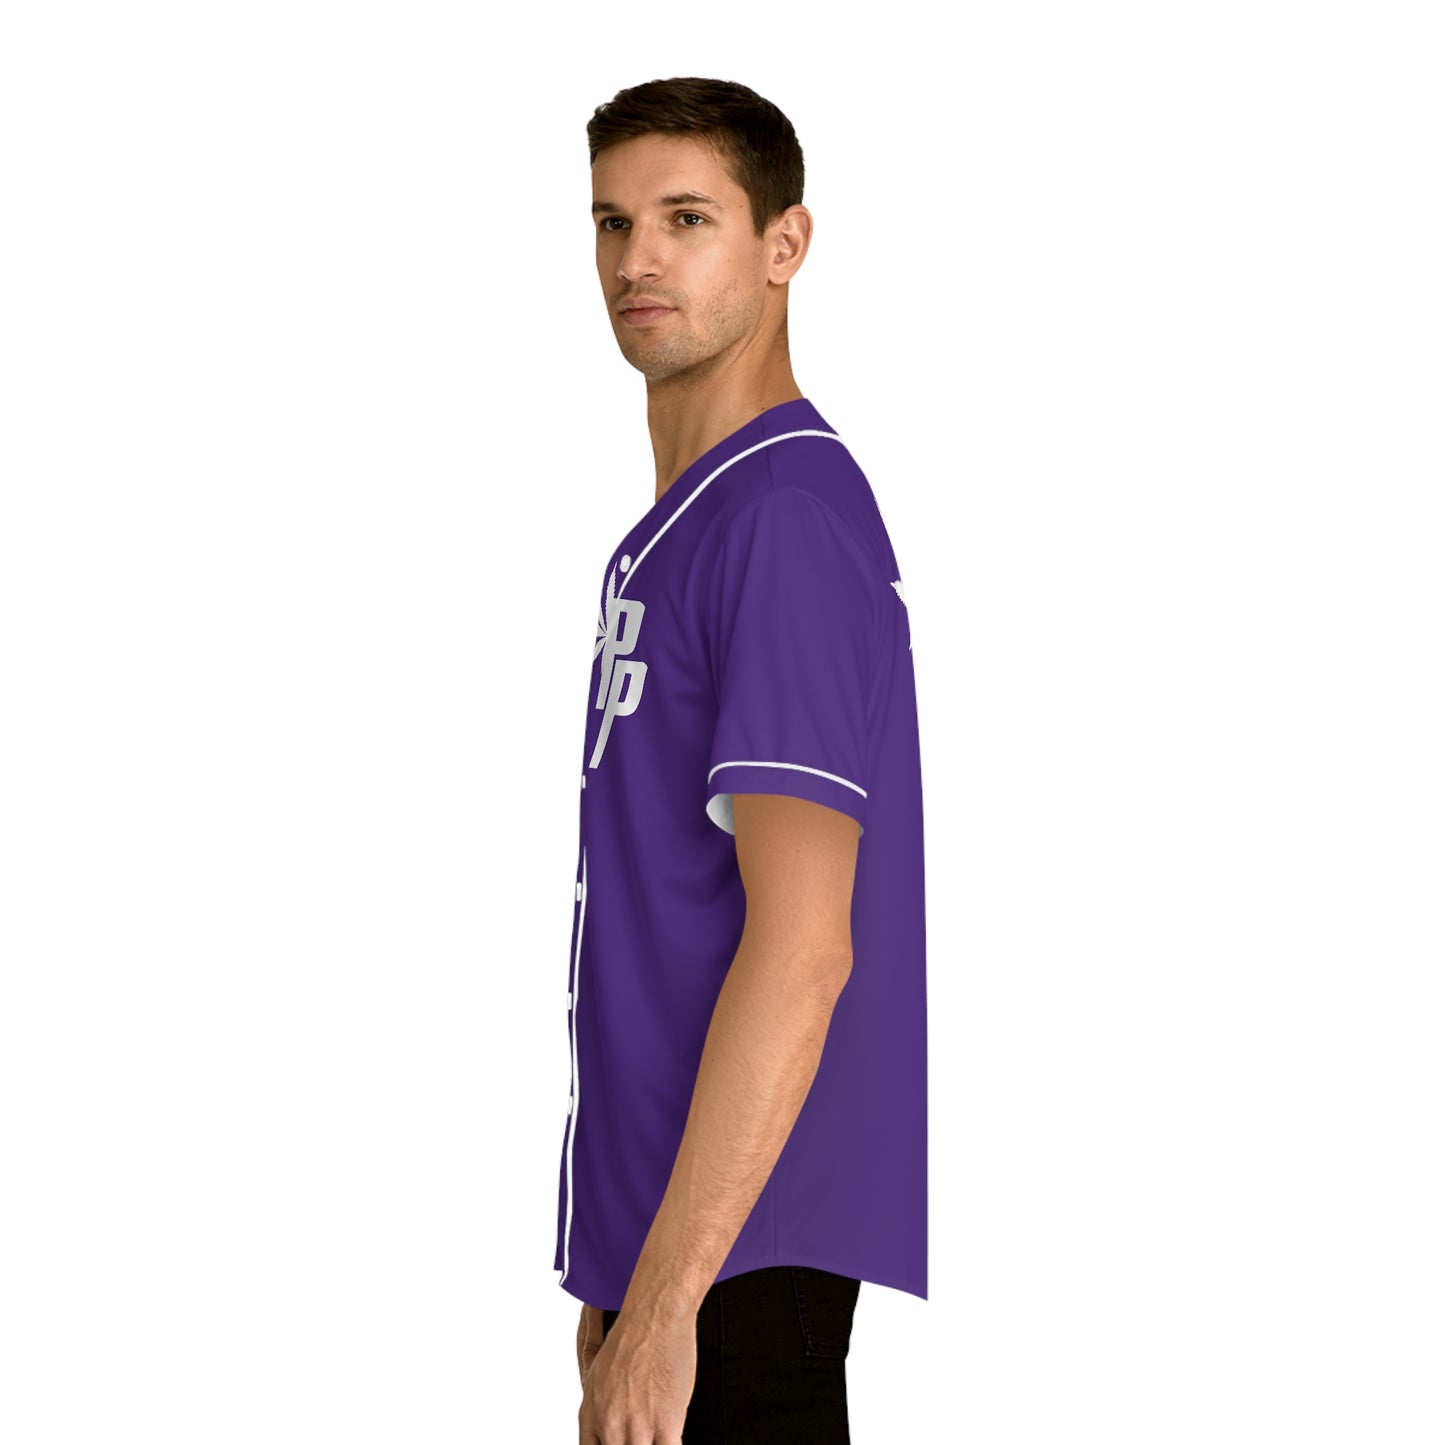 Peter Purple Baseball Jersey